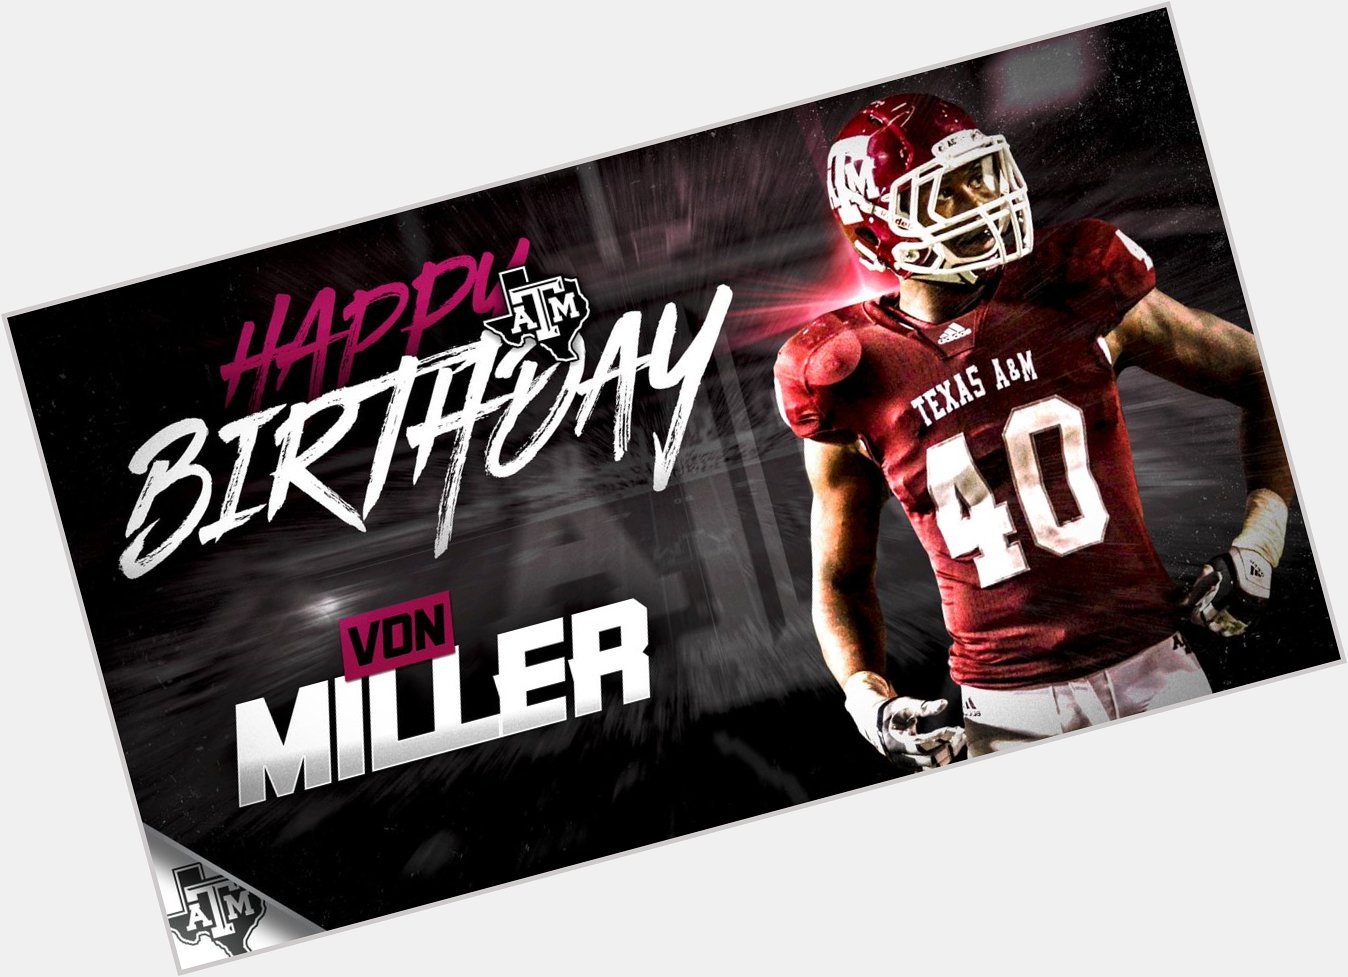  join us in wishing Von Miller a Happy Birthday! 

Happy Birthday, 